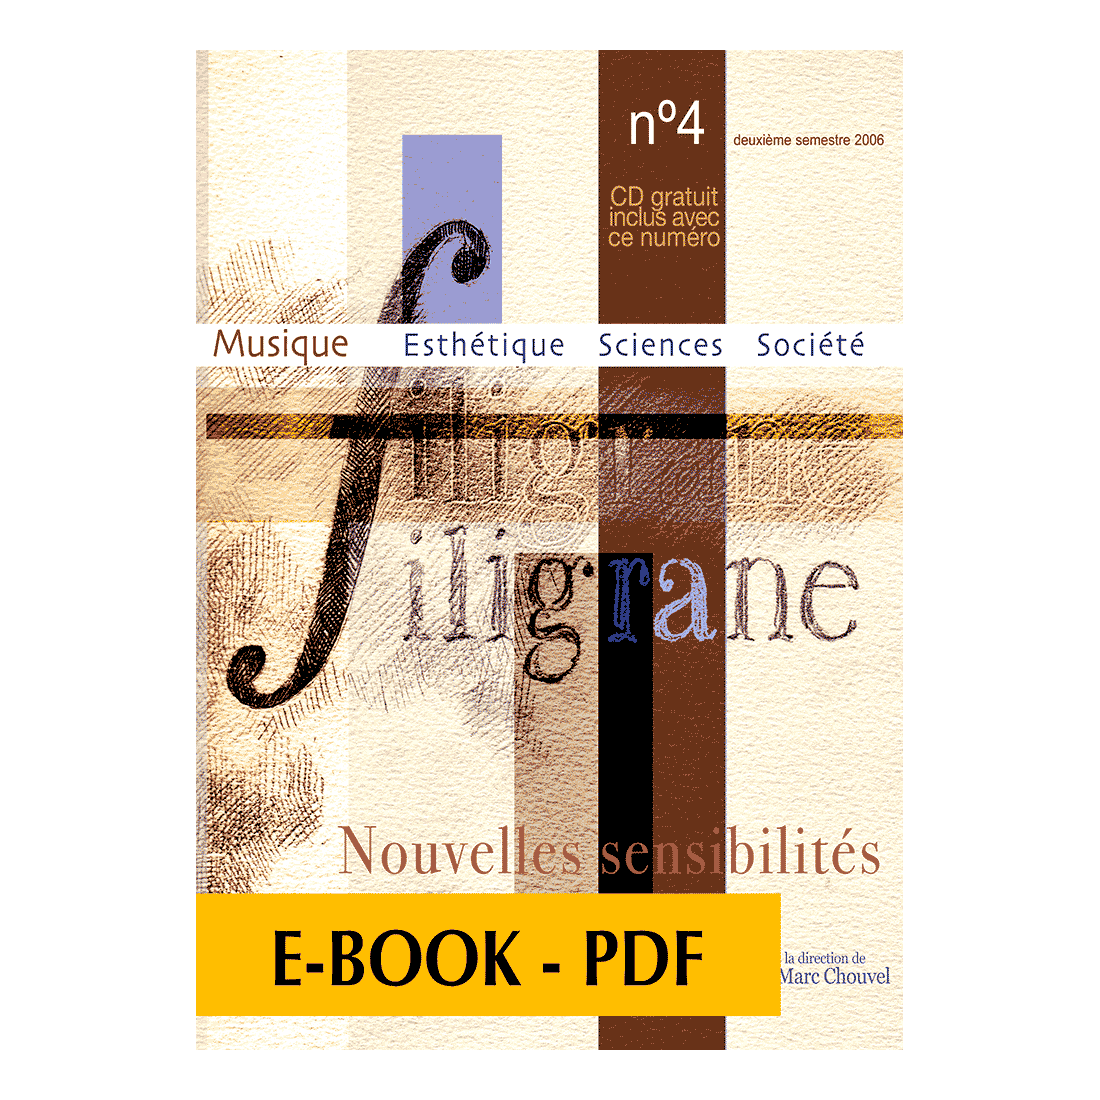 Revue Filigrane n°4 - Nouvelles sensibilités - E-book PDF